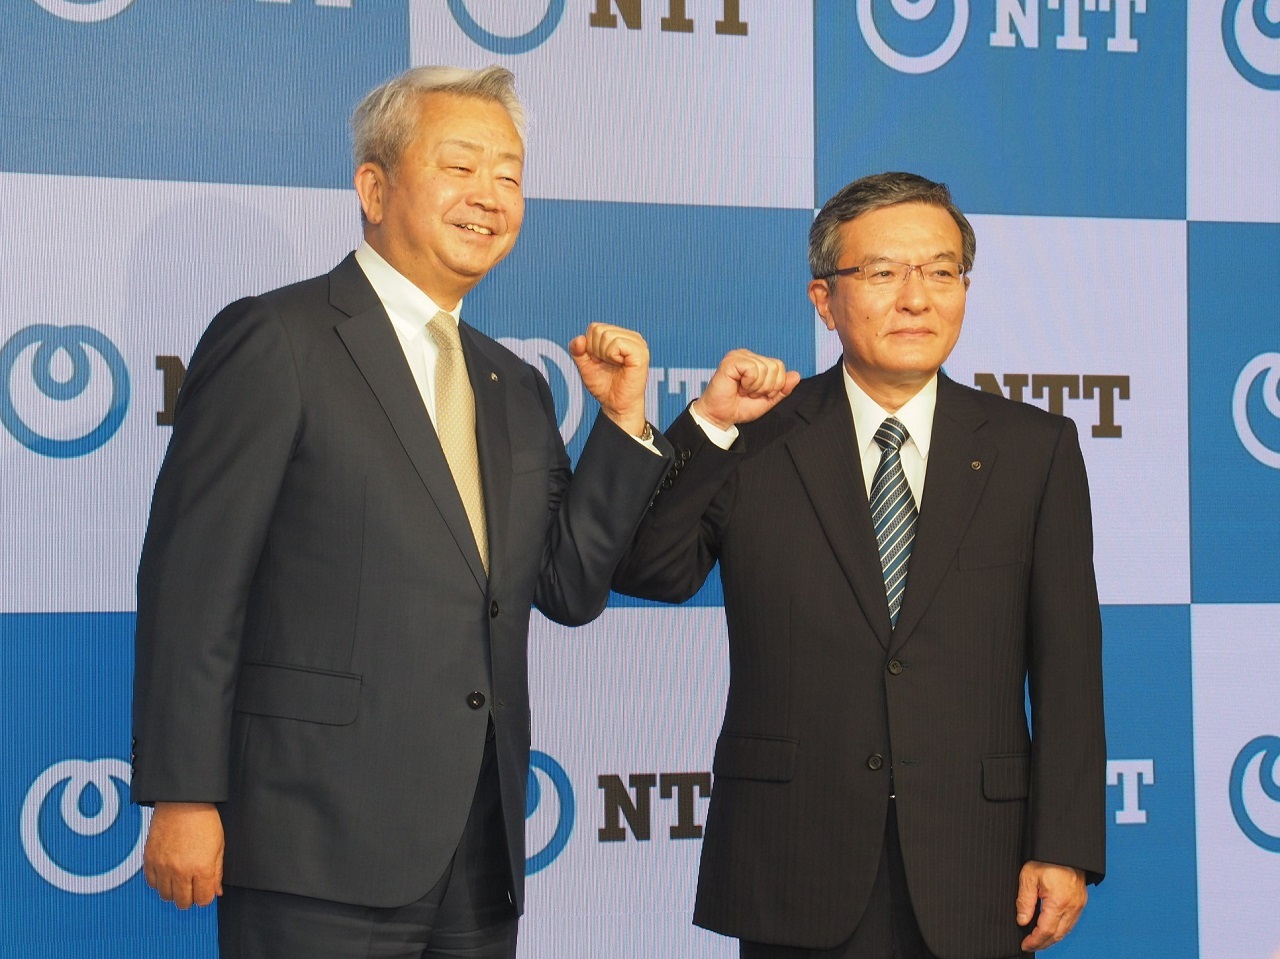 澤田氏(左)と、新たにNTTの社長に就任する島田氏(右)。島田氏は澤田氏を8年間にわたって支えてきた人物だ